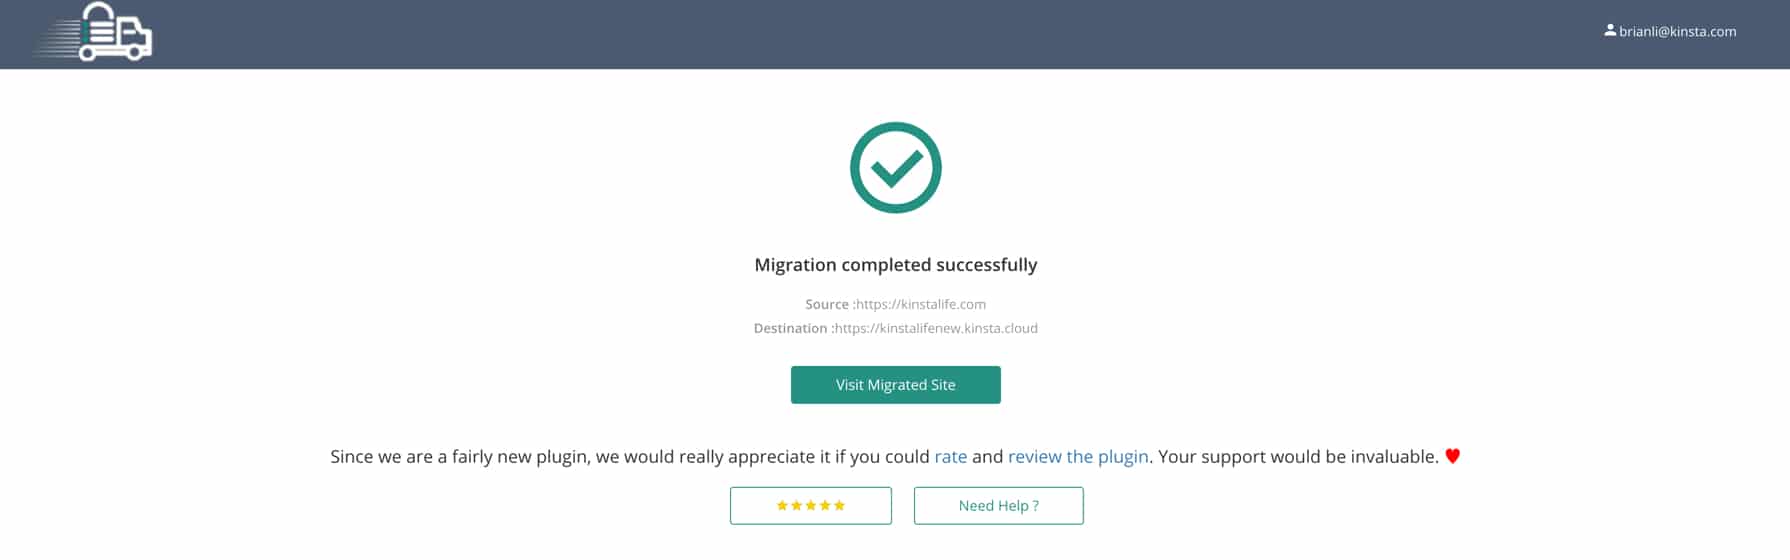 Een successvolle WordPress migratie met Migrate Guru.